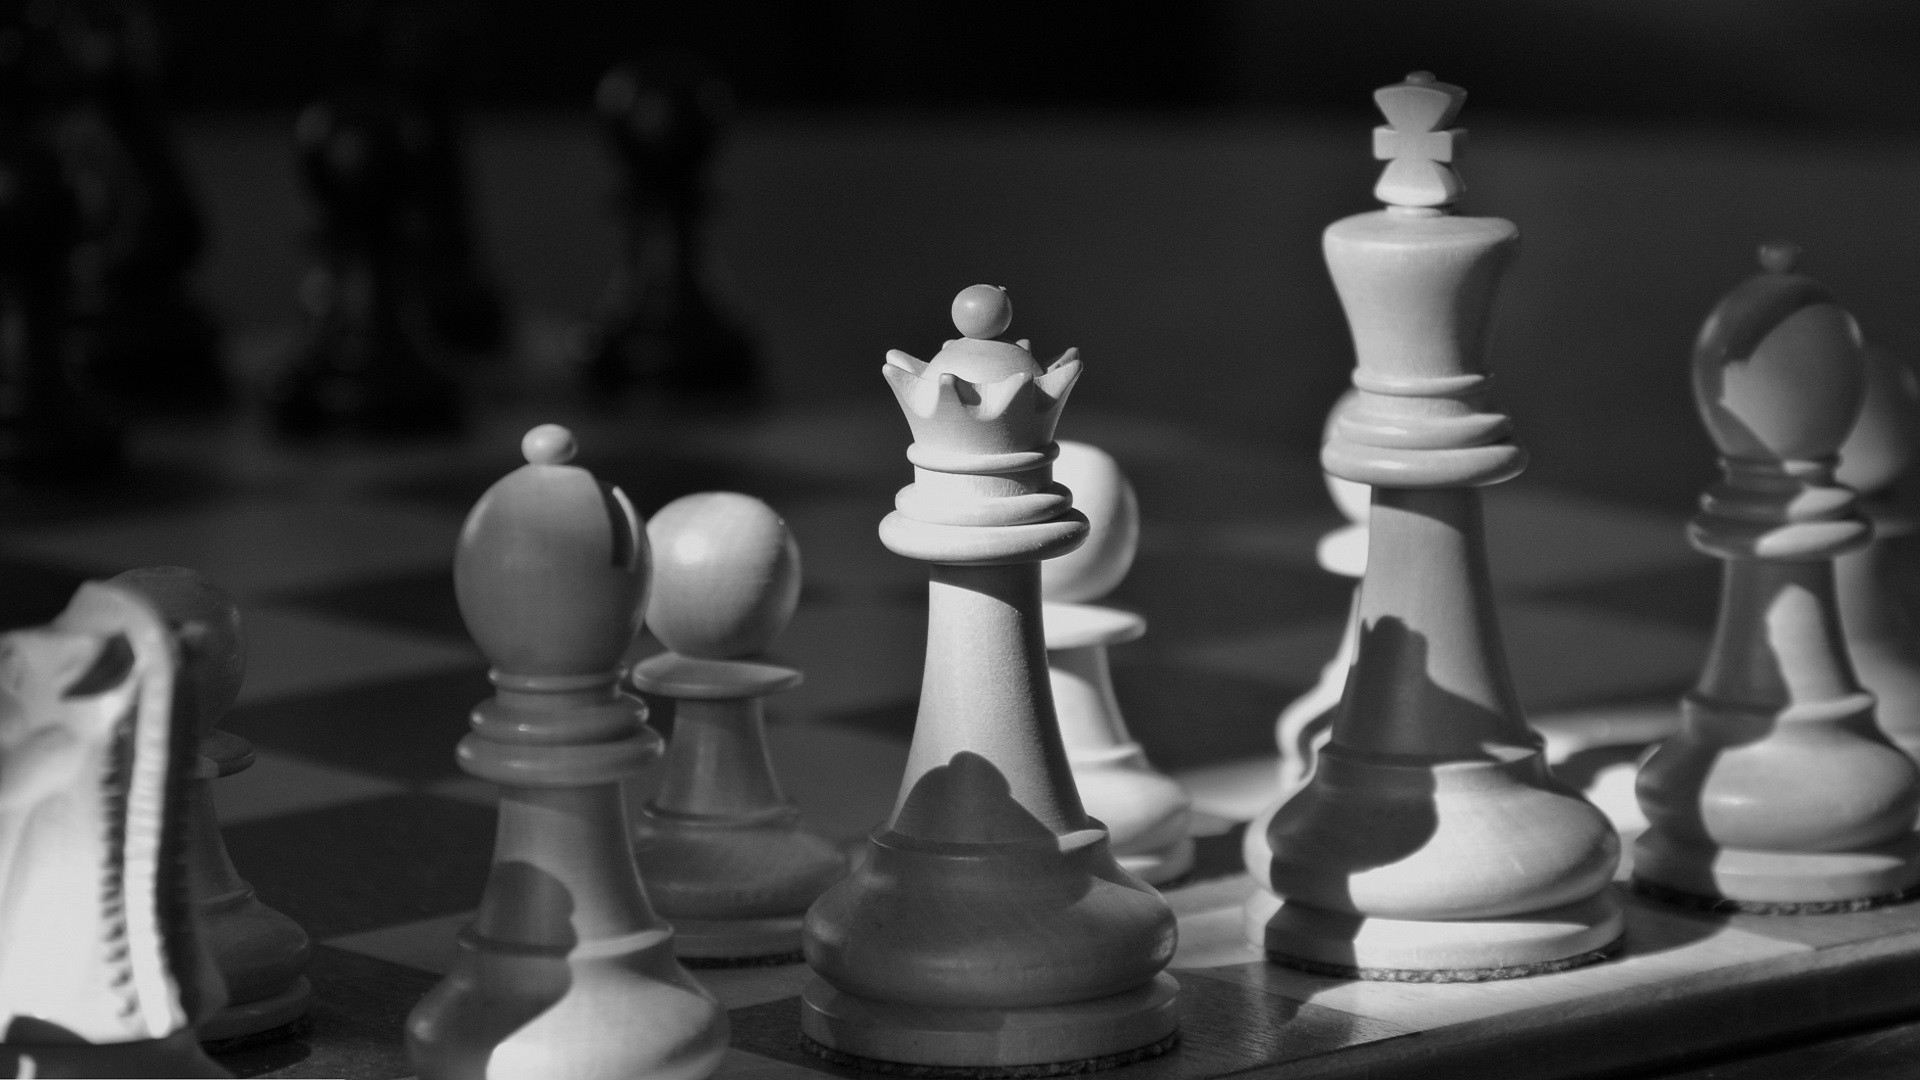 schachkönig tapete,schachbrett,spiele,indoor spiele und sport,schach,schwarz